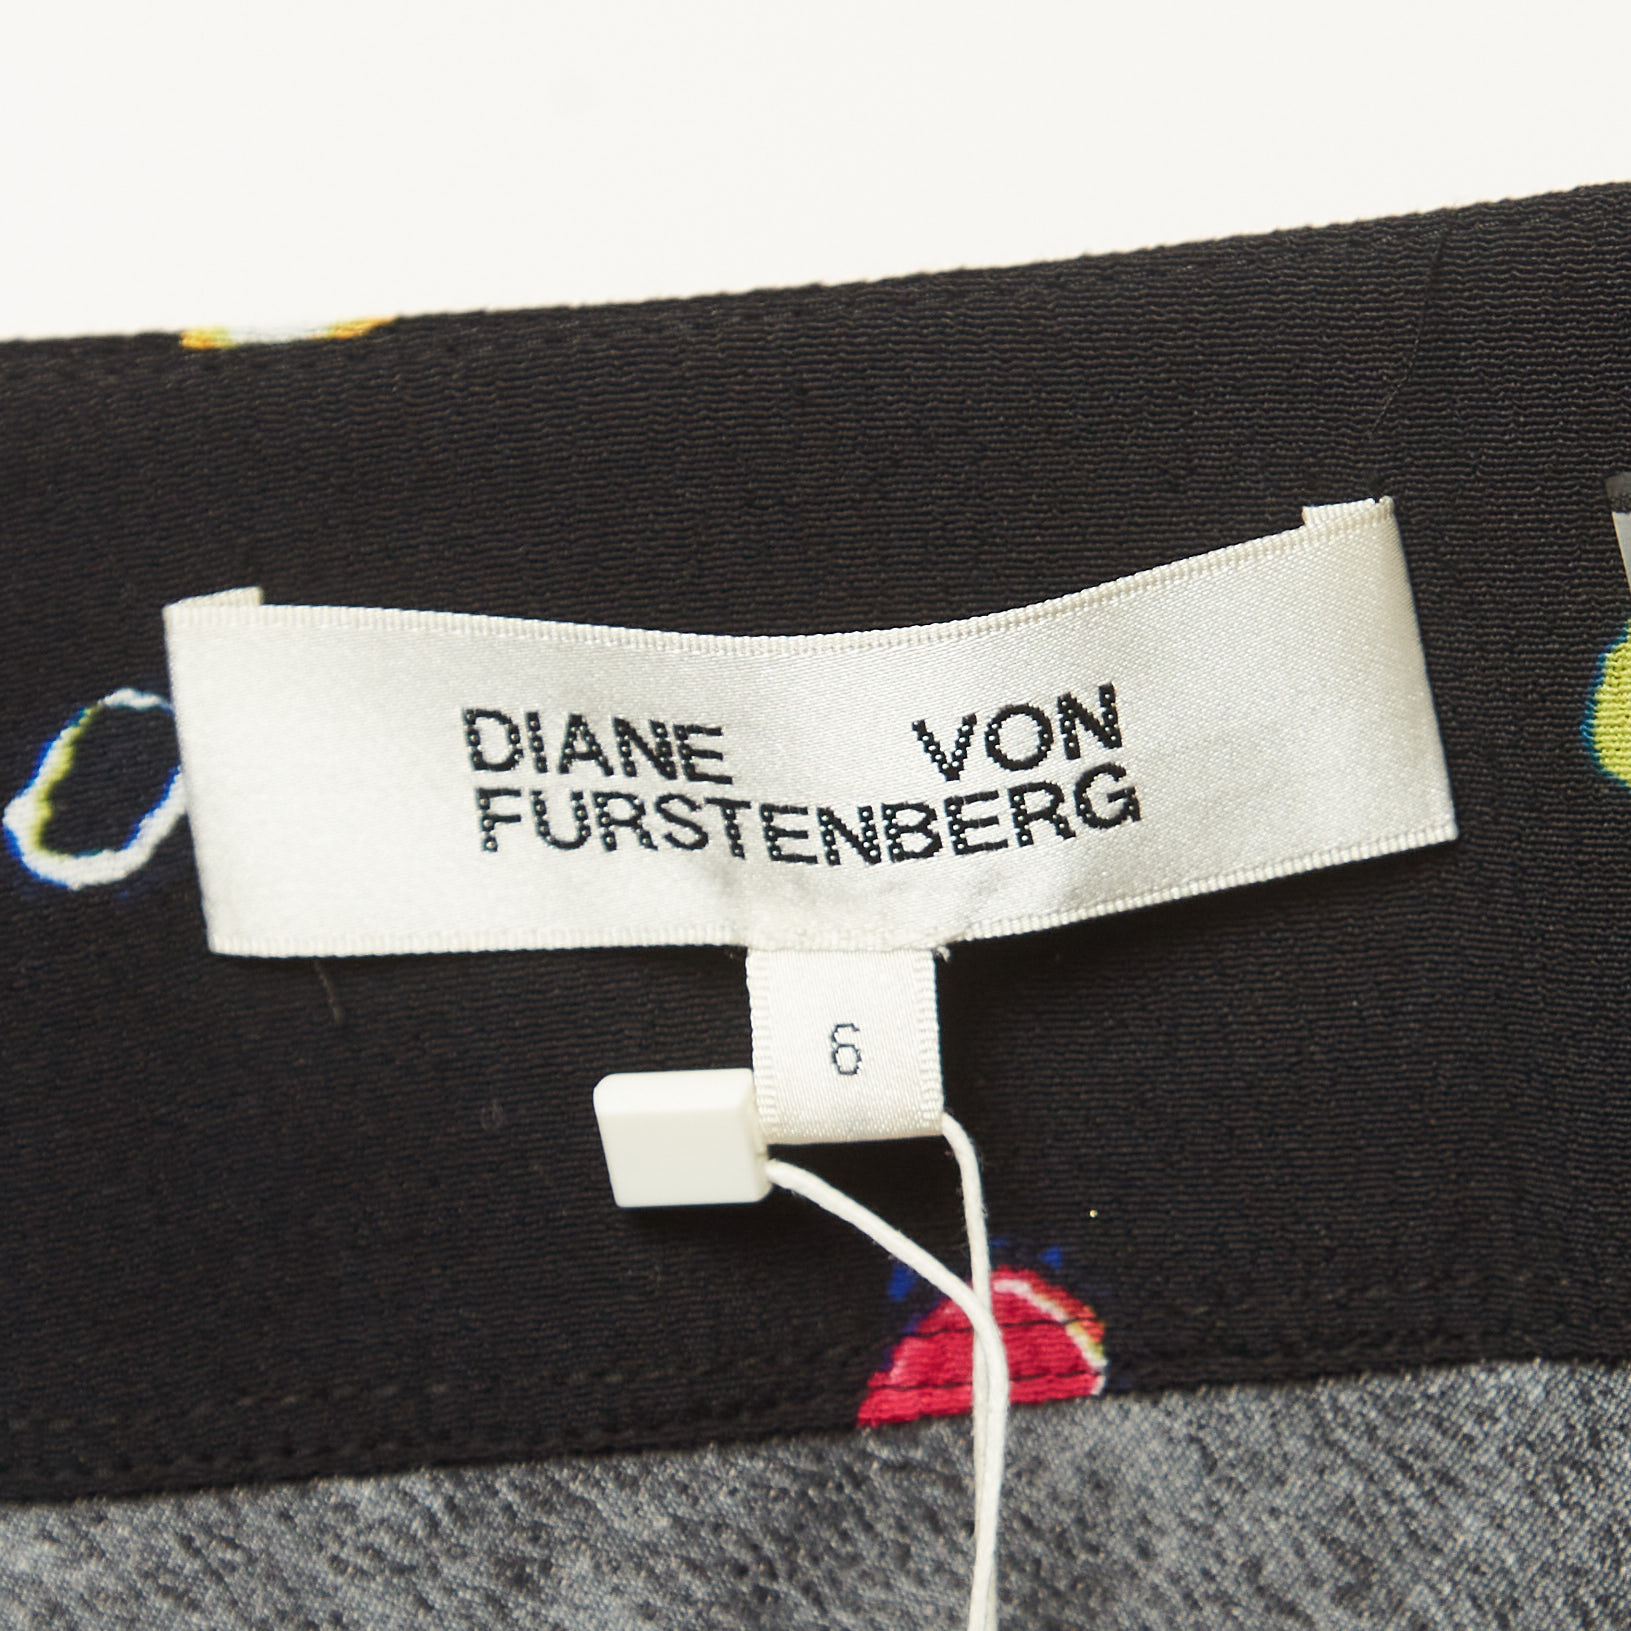 Diane Von Furstenberg Black Polka Dot Print Crepe Midi Skirt M